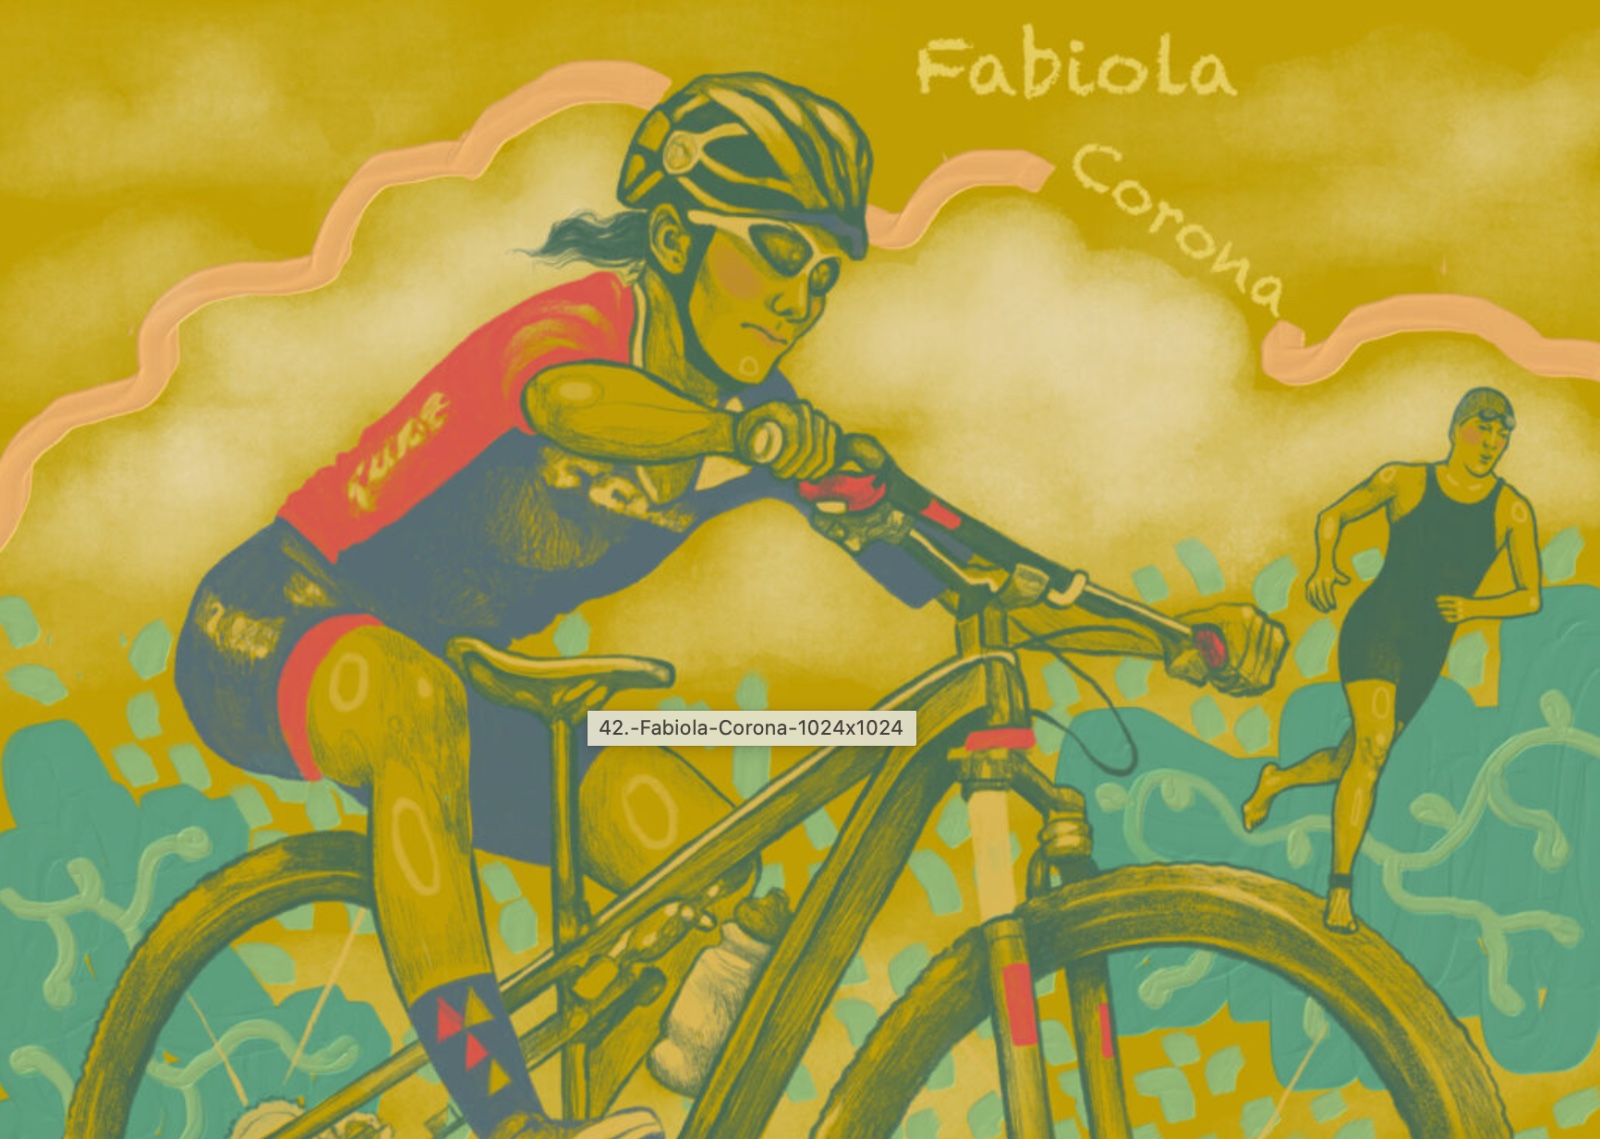 Fabiola Corona es la primera mujer triatleta mexicana en calificar para los juegos olímpicos. Ilustración por Mónica Soria